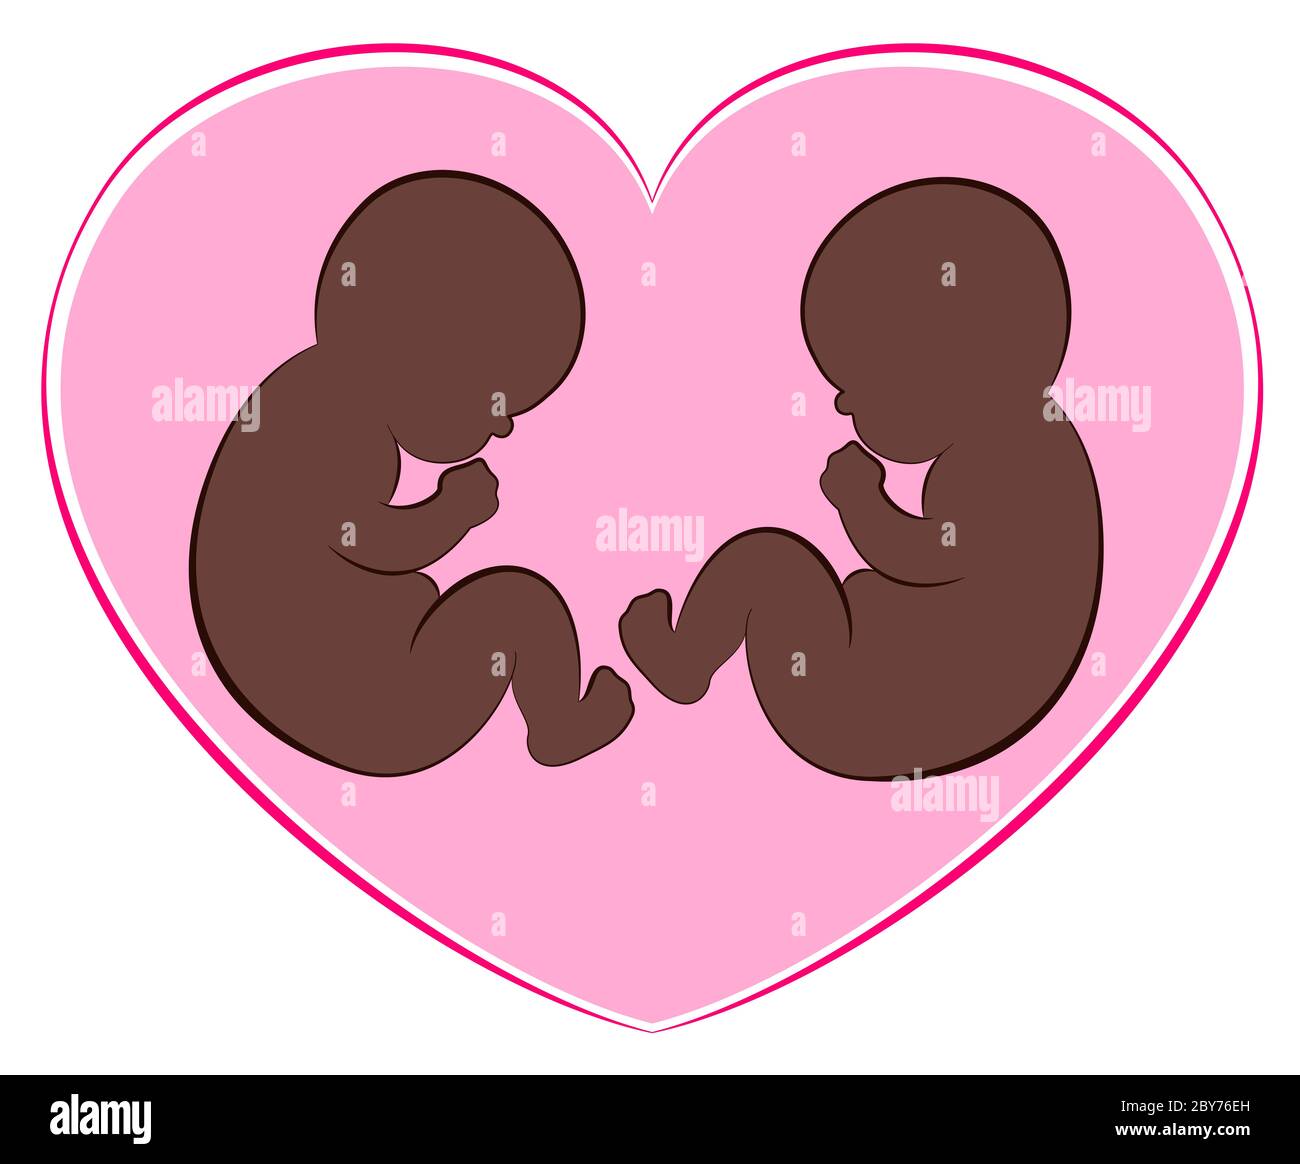 Ilustración de dos bebés negros o gemelos con un corazón rosa alrededor de ellos. Foto de stock